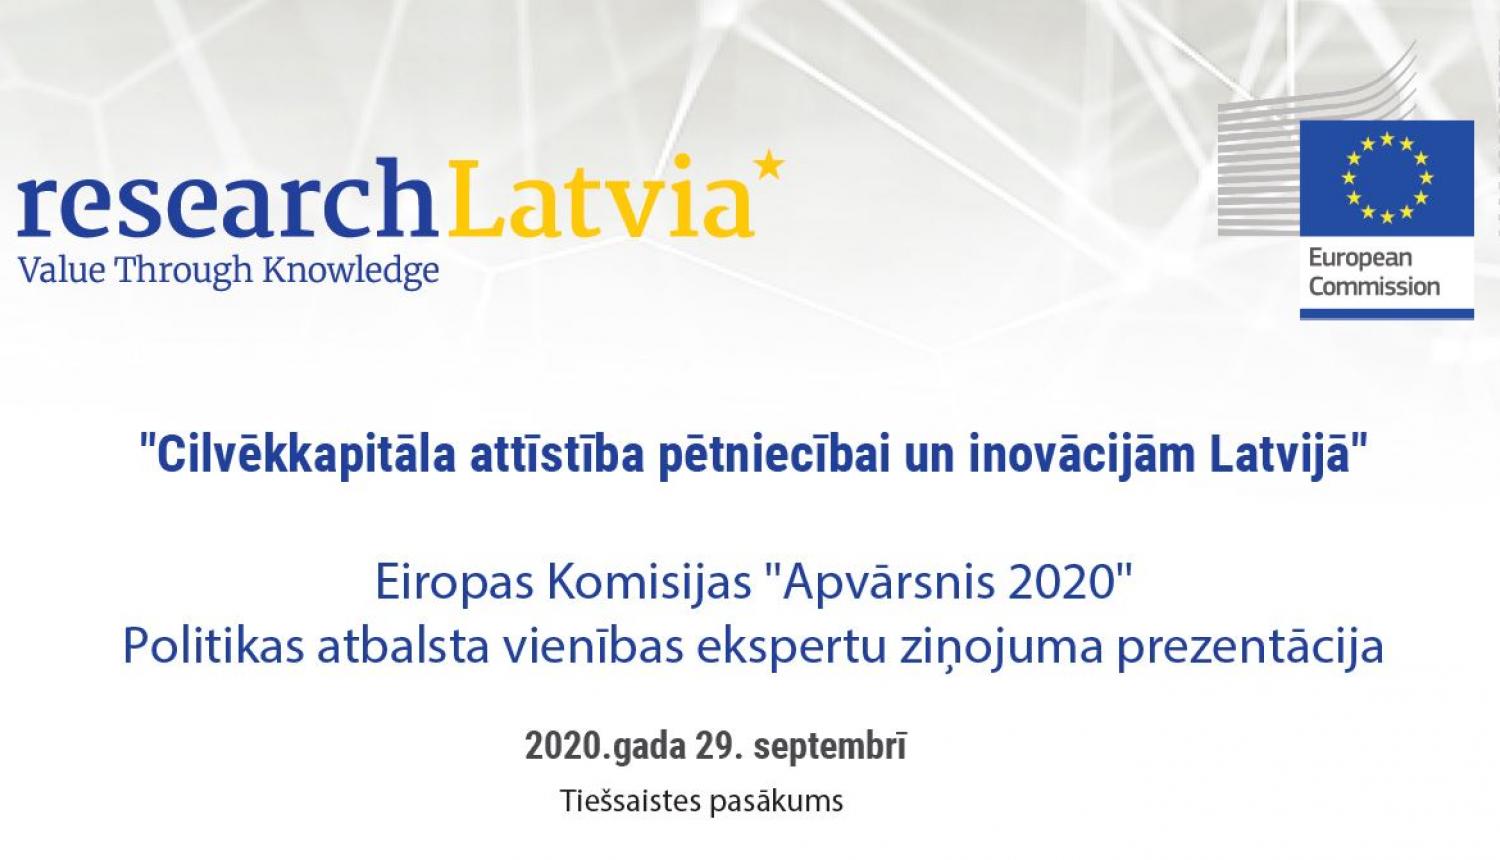 Izglītības un zinātnes ministrija aicina iepazīties ar pētījuma rezultātiem par cilvēkkapitāla attīstību pētniecībā un inovācijās Latvijā